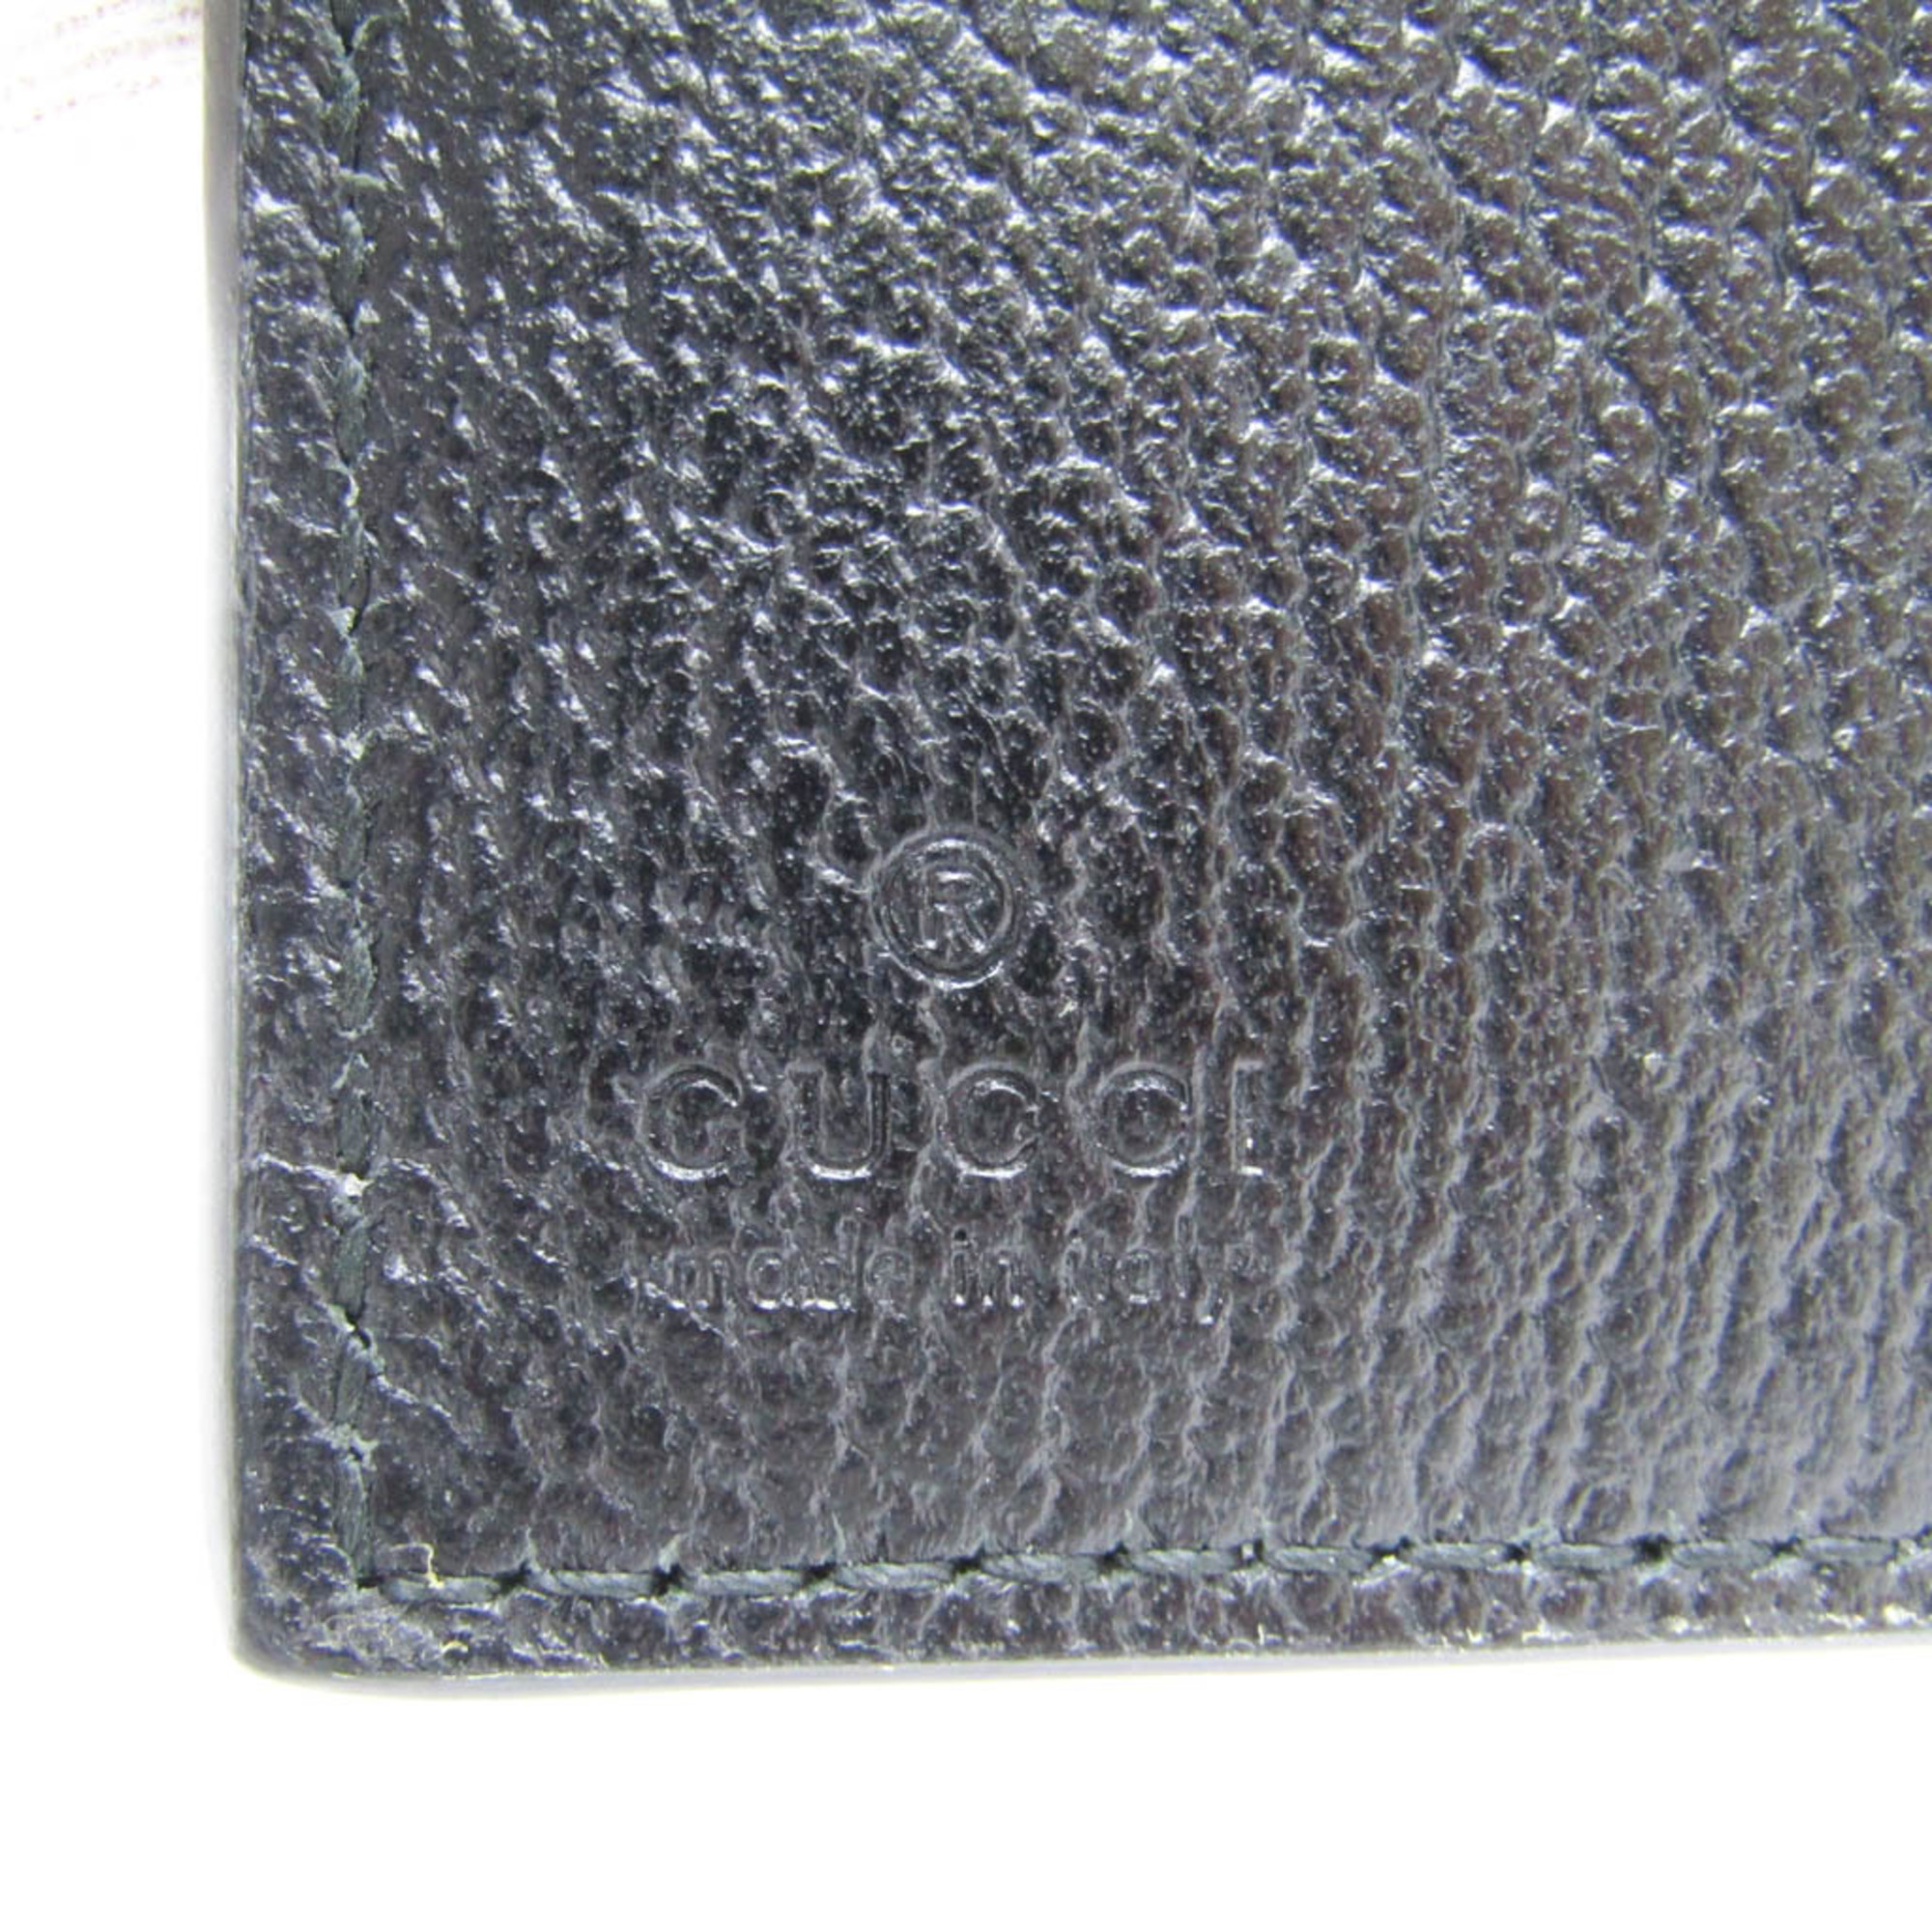 Gucci GG Marmont 428740 Women,Men Leather Long Wallet (bi-fold) Black